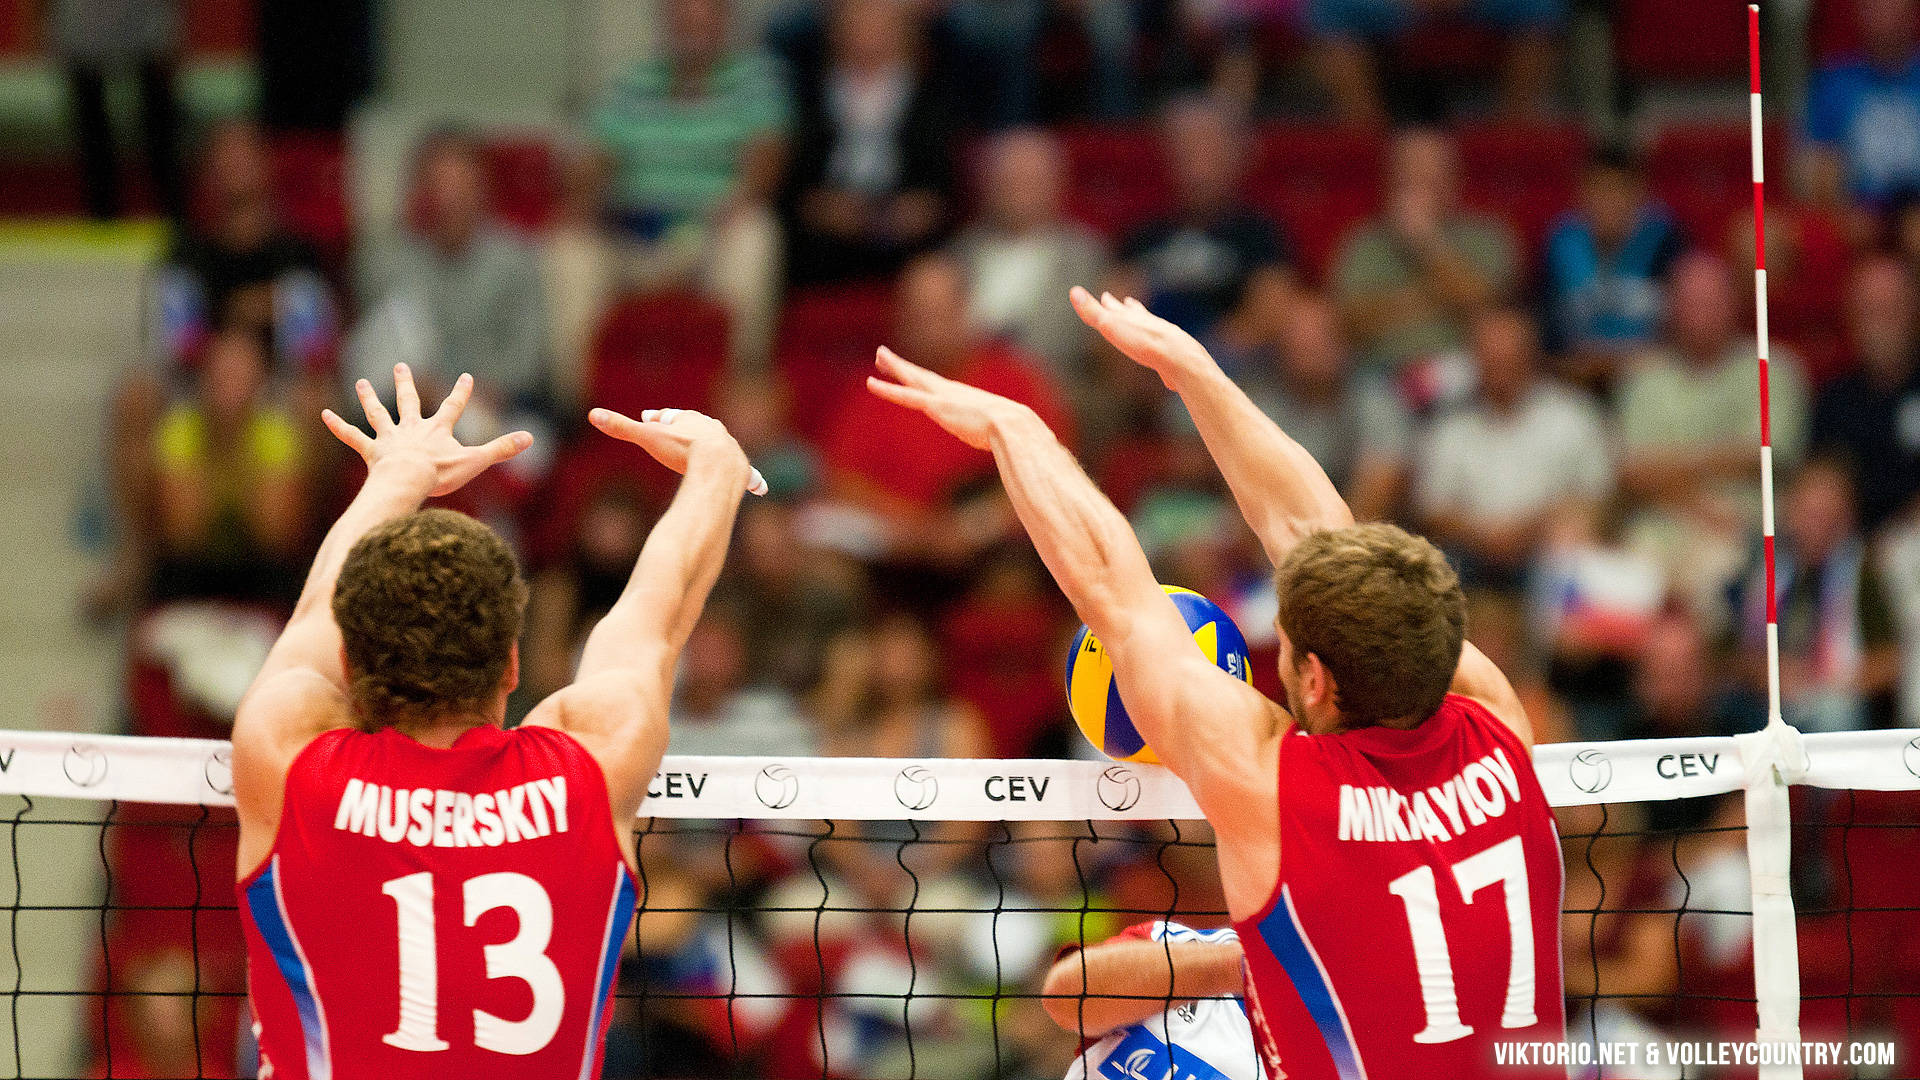 Nyd at konkurrencedygtigt spil af indendørs volleyball. Wallpaper